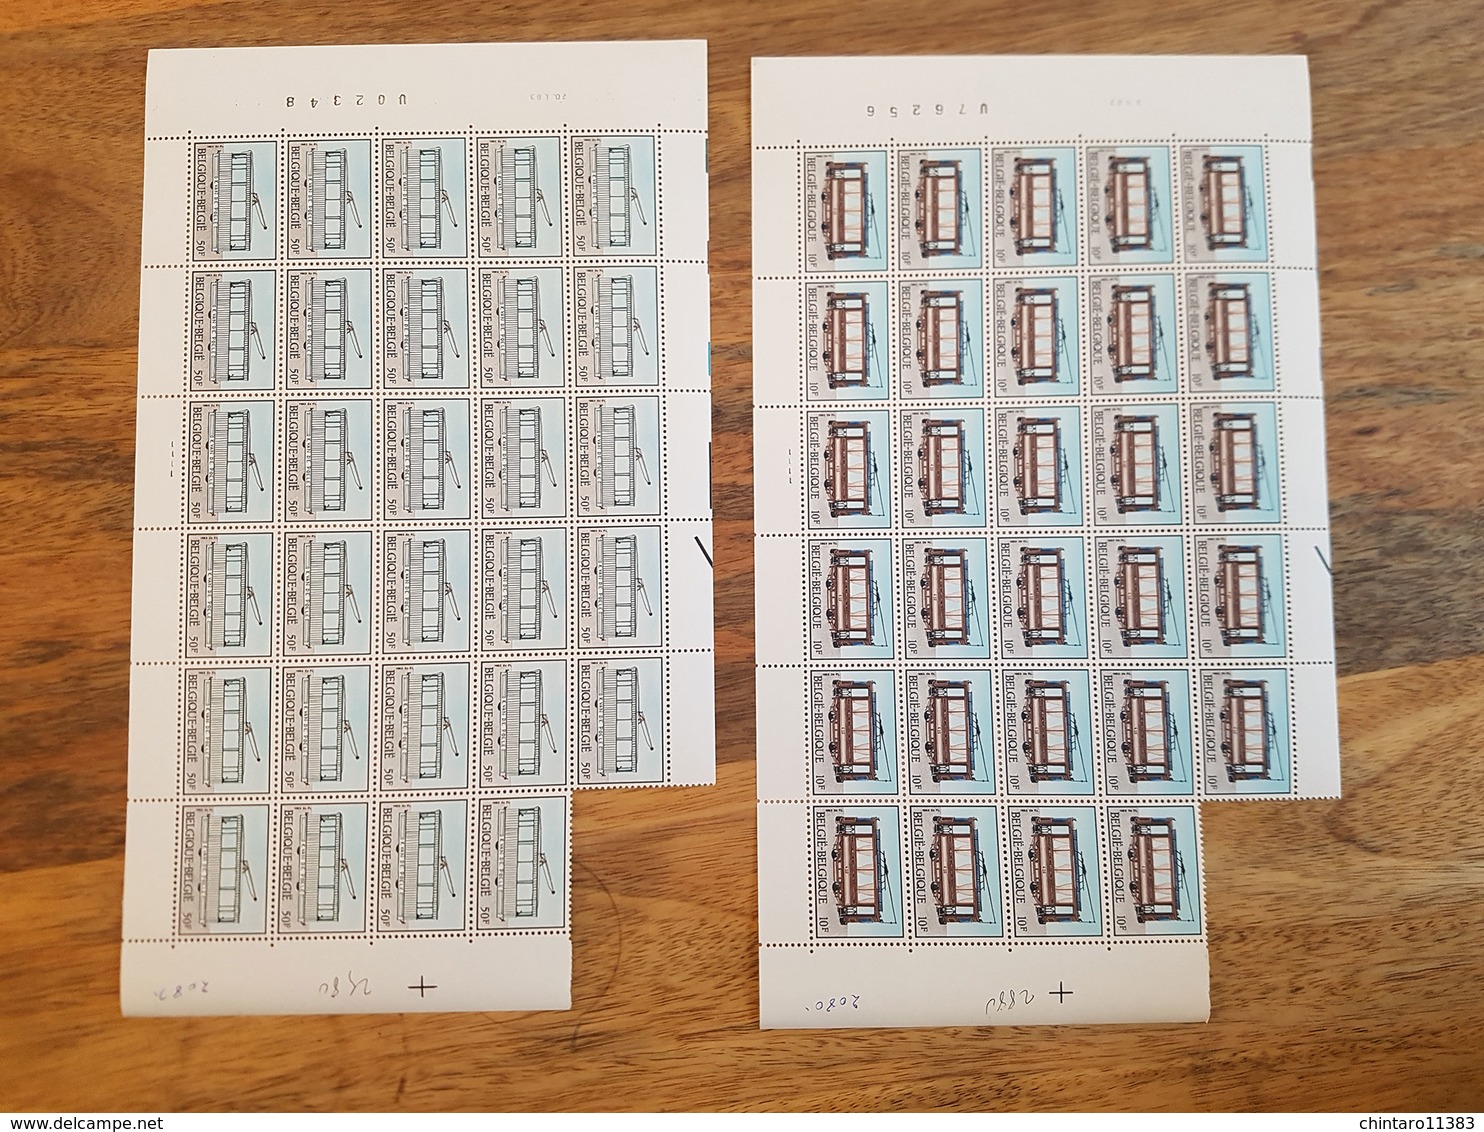 Lot feuilles incomplètes (manque 1) de timbres Belgique - Année 1983